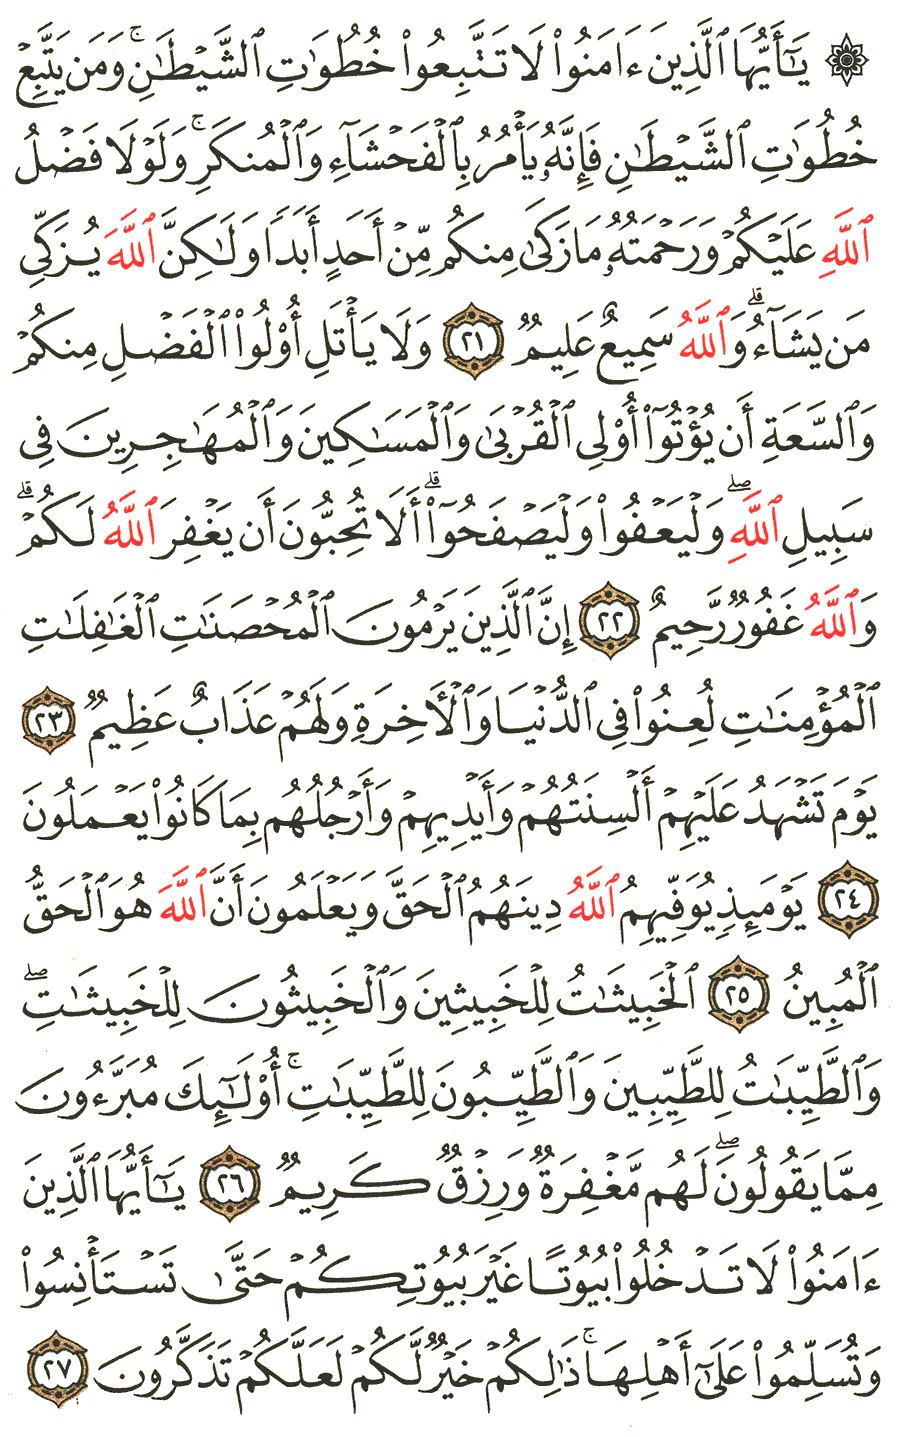 الصفحة 352 من القرآن الكريم